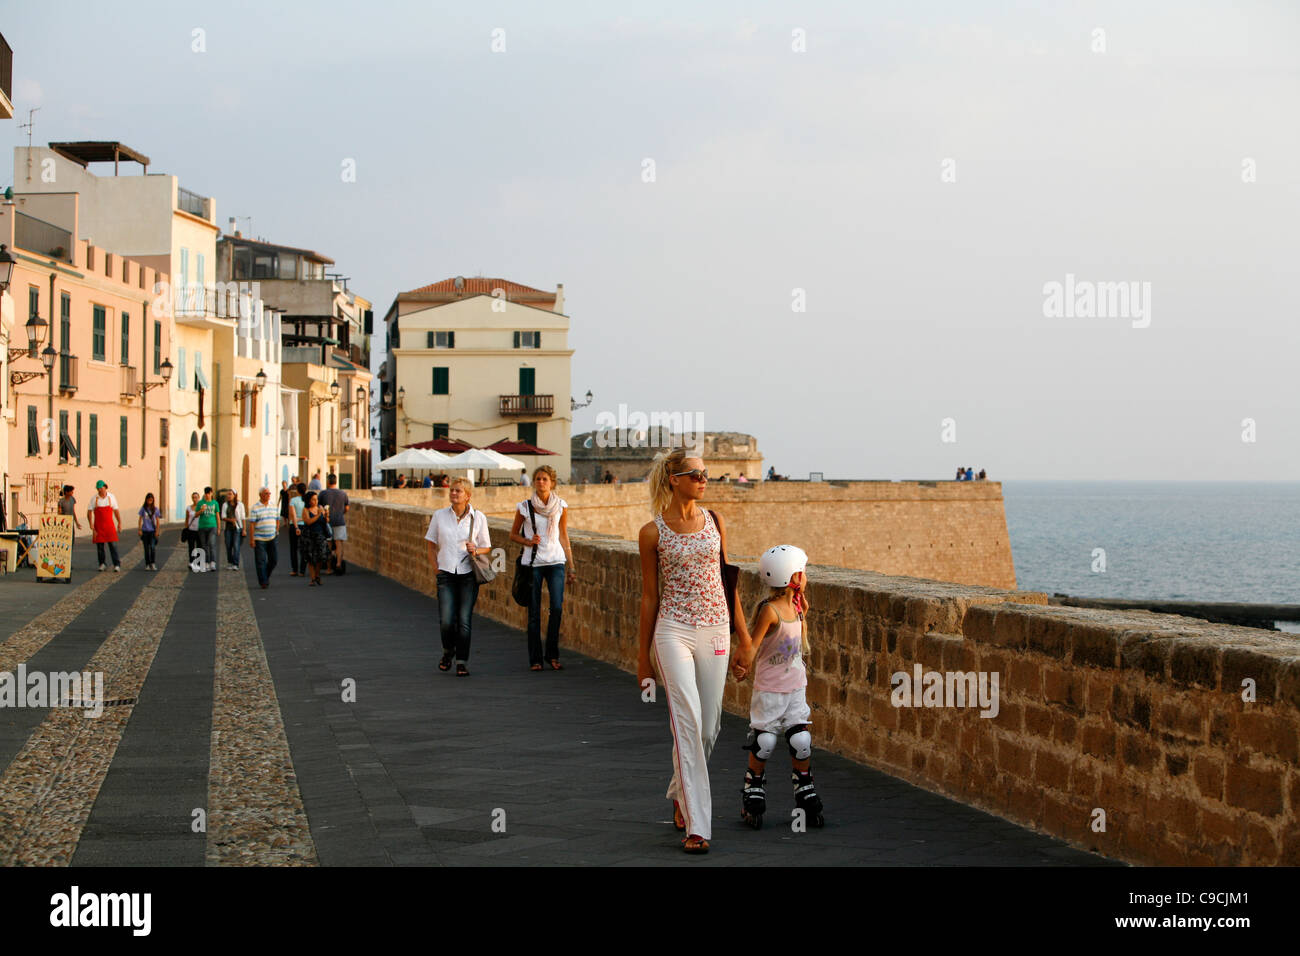 The promenade along the city walls, Alghero, Sardinia, Italy. Stock Photo